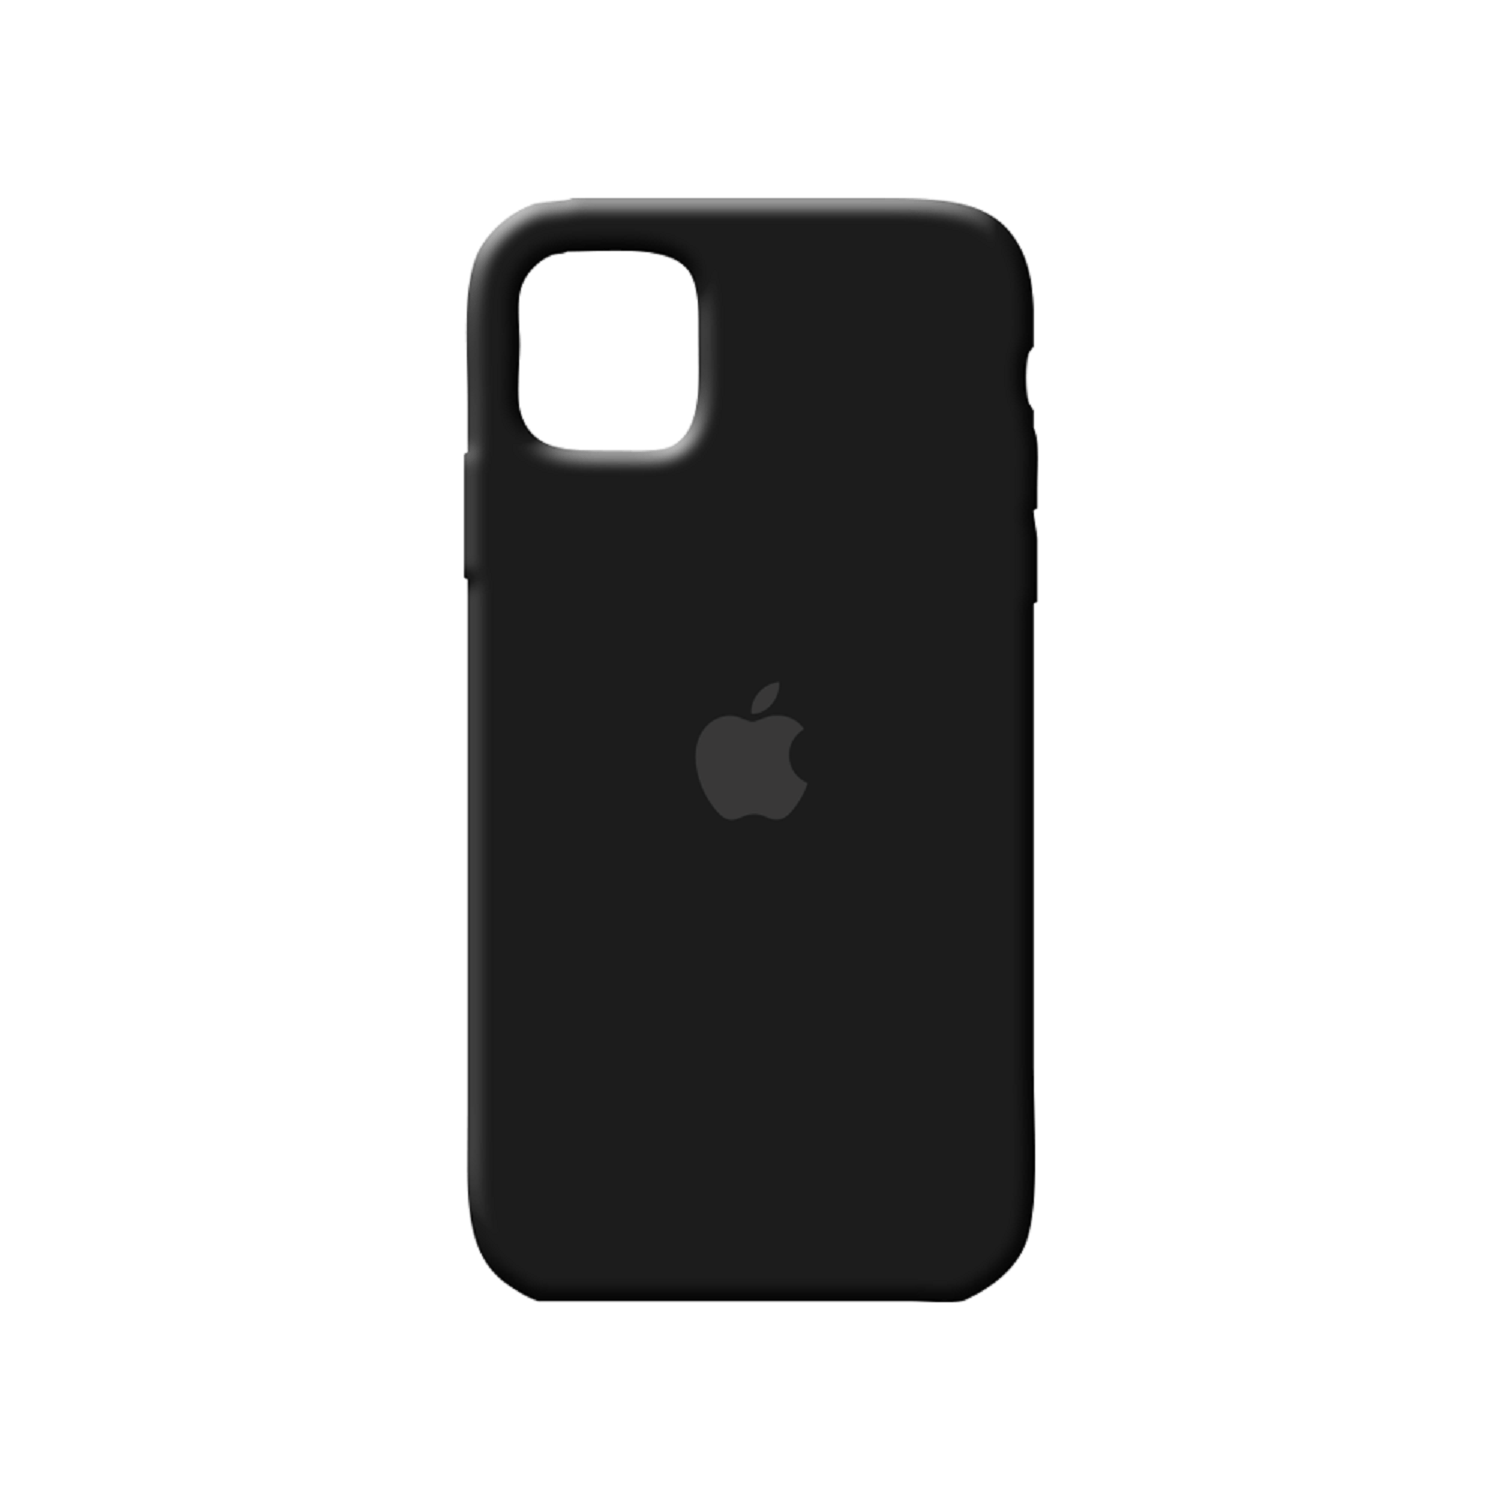 Funda Silicone Case Iphone 12 - Negro